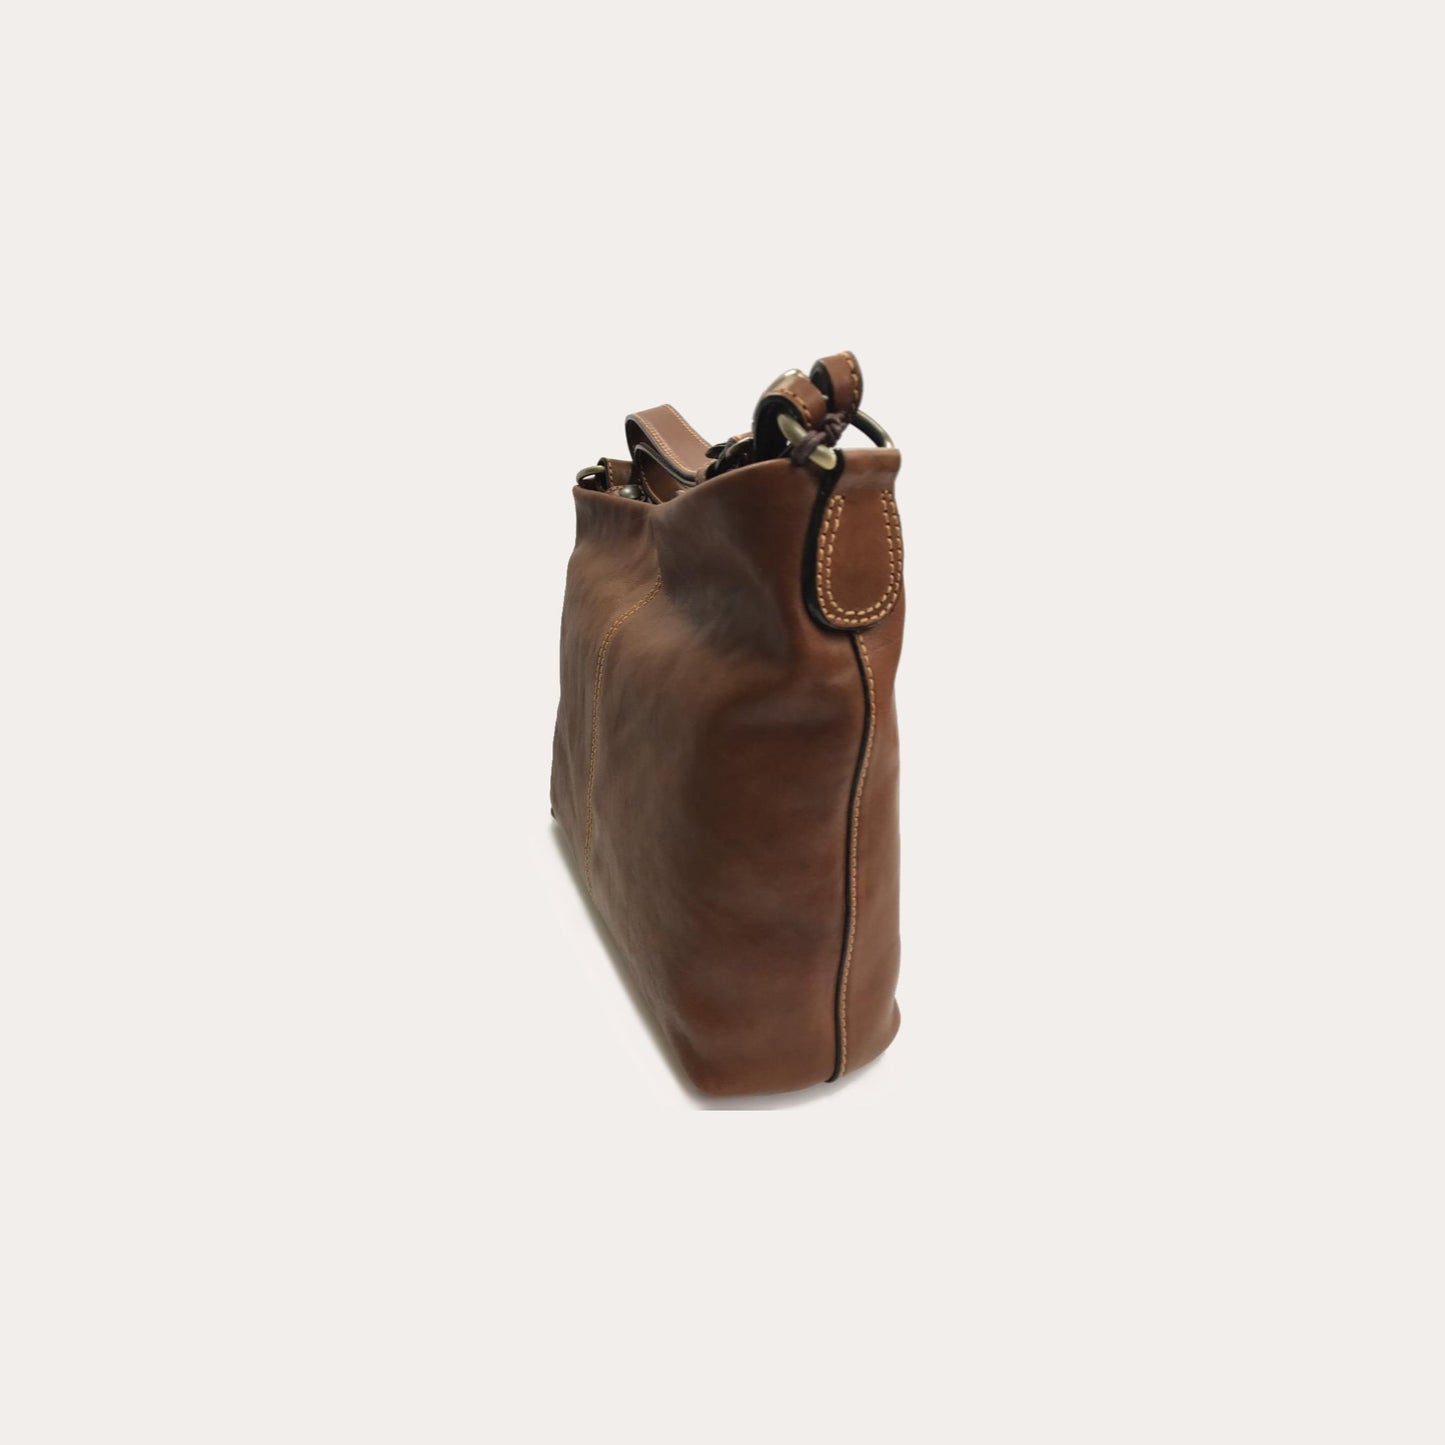 Gianni Conti Tan Leather Bag